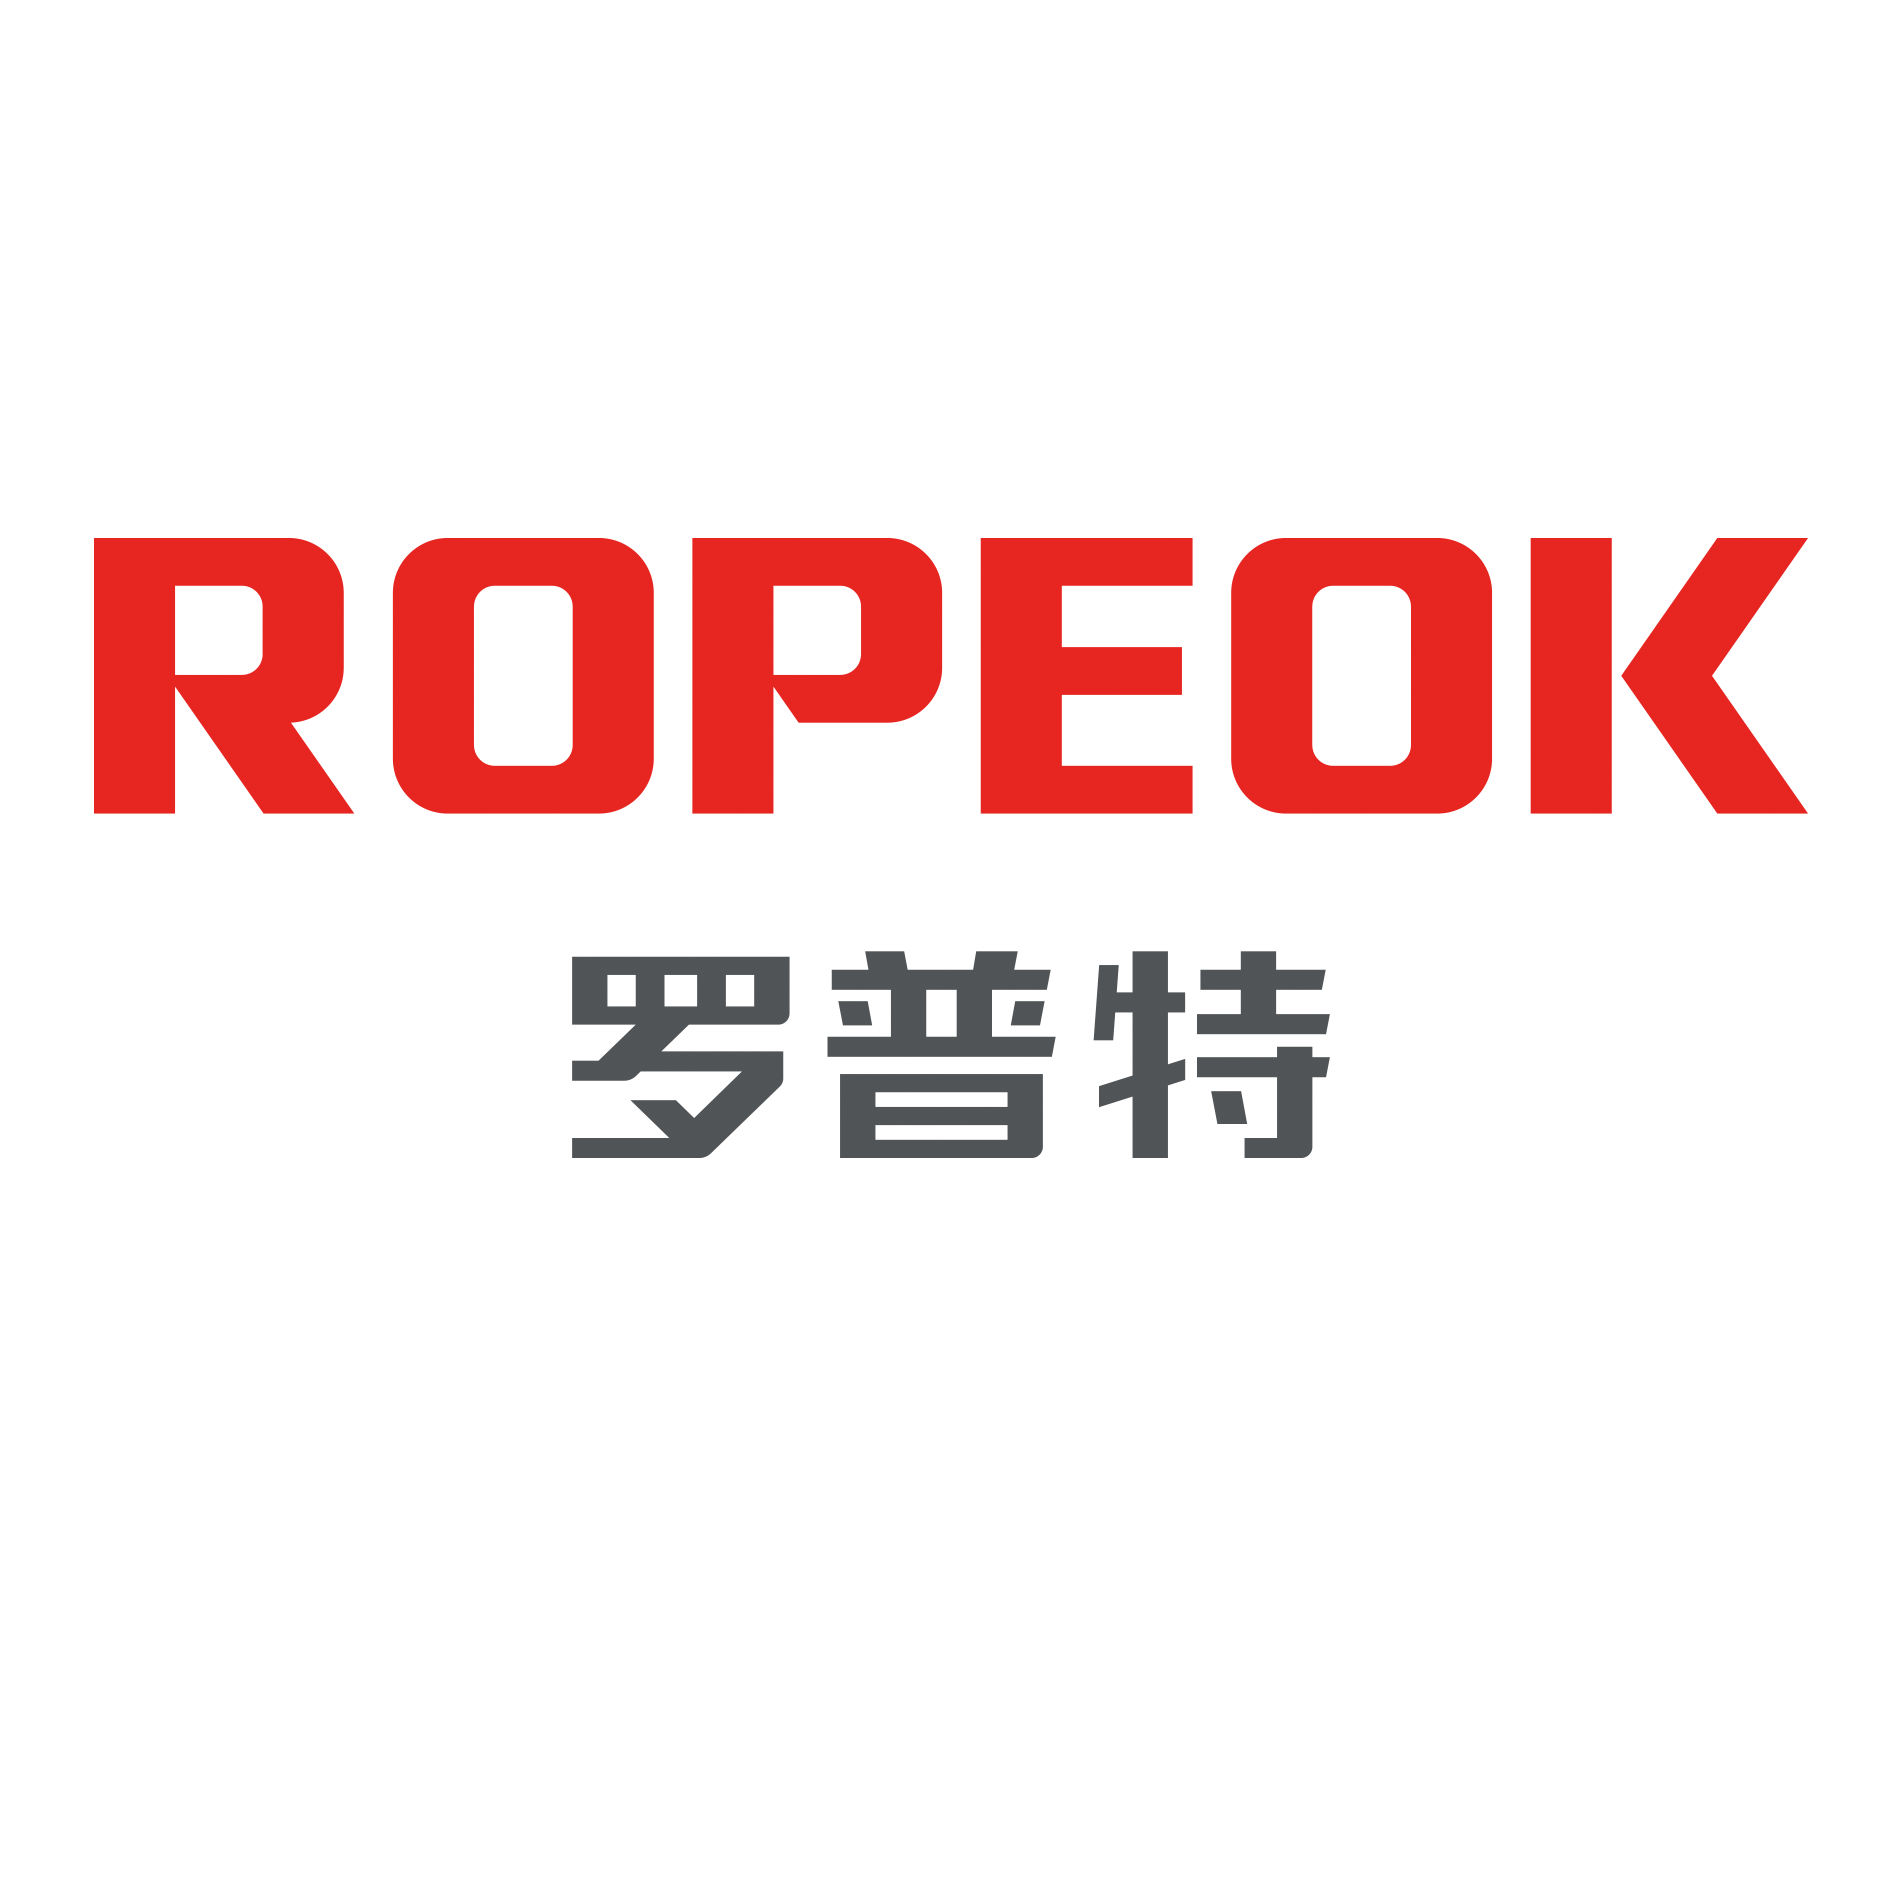 罗普特科技集团股份有限公司